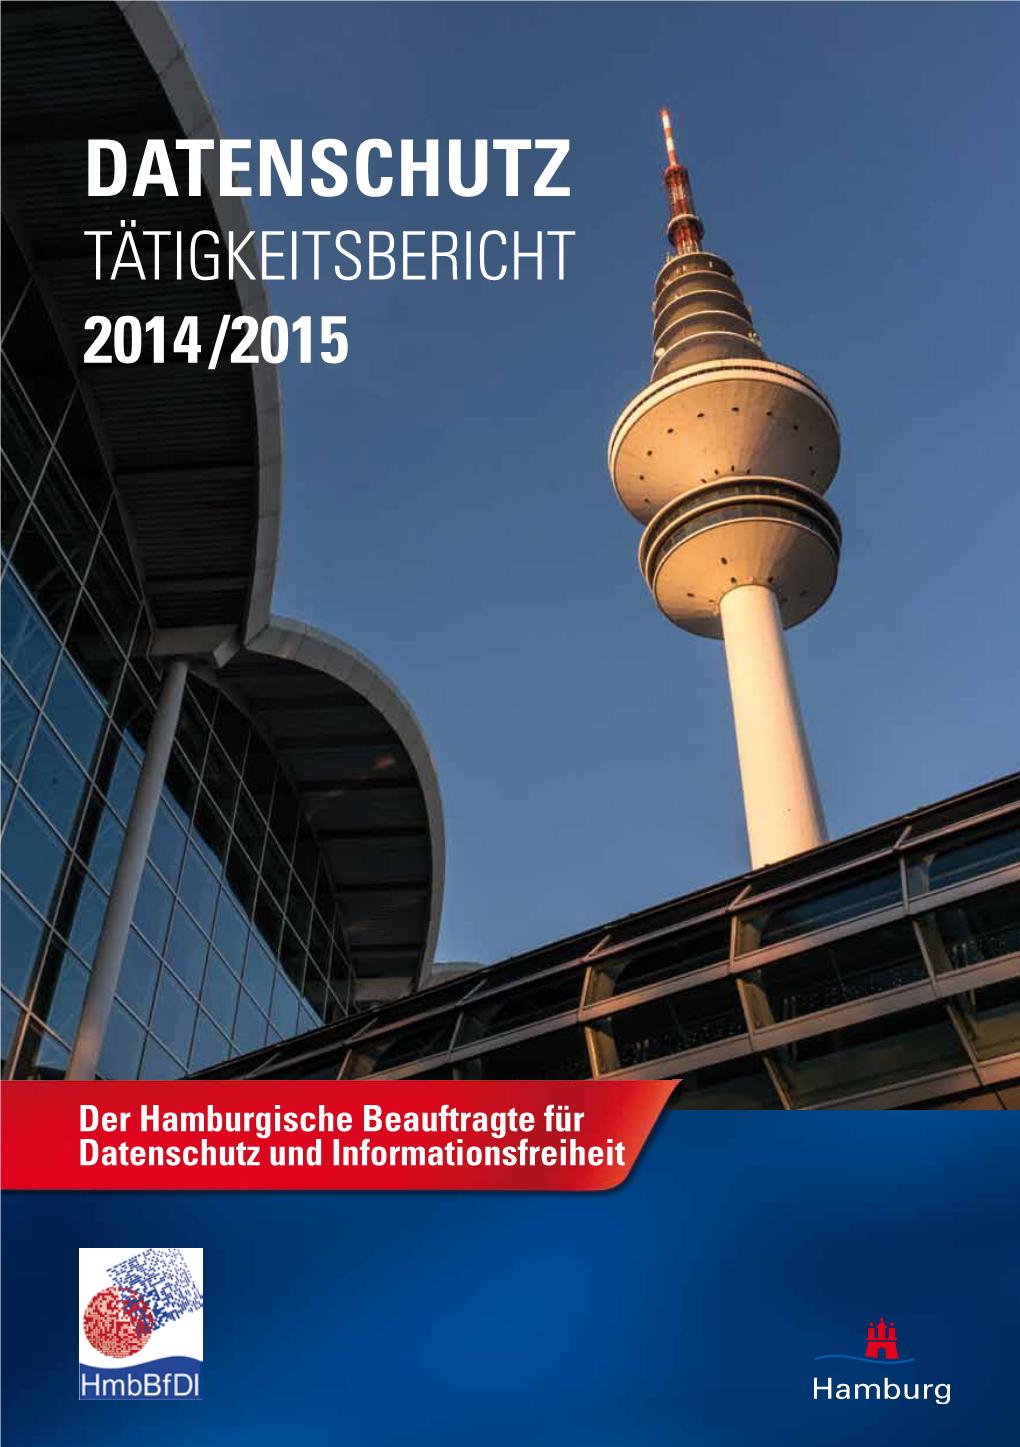 Tätigkeitsbericht Datenschutz 2014/2015 Hmbbfdi